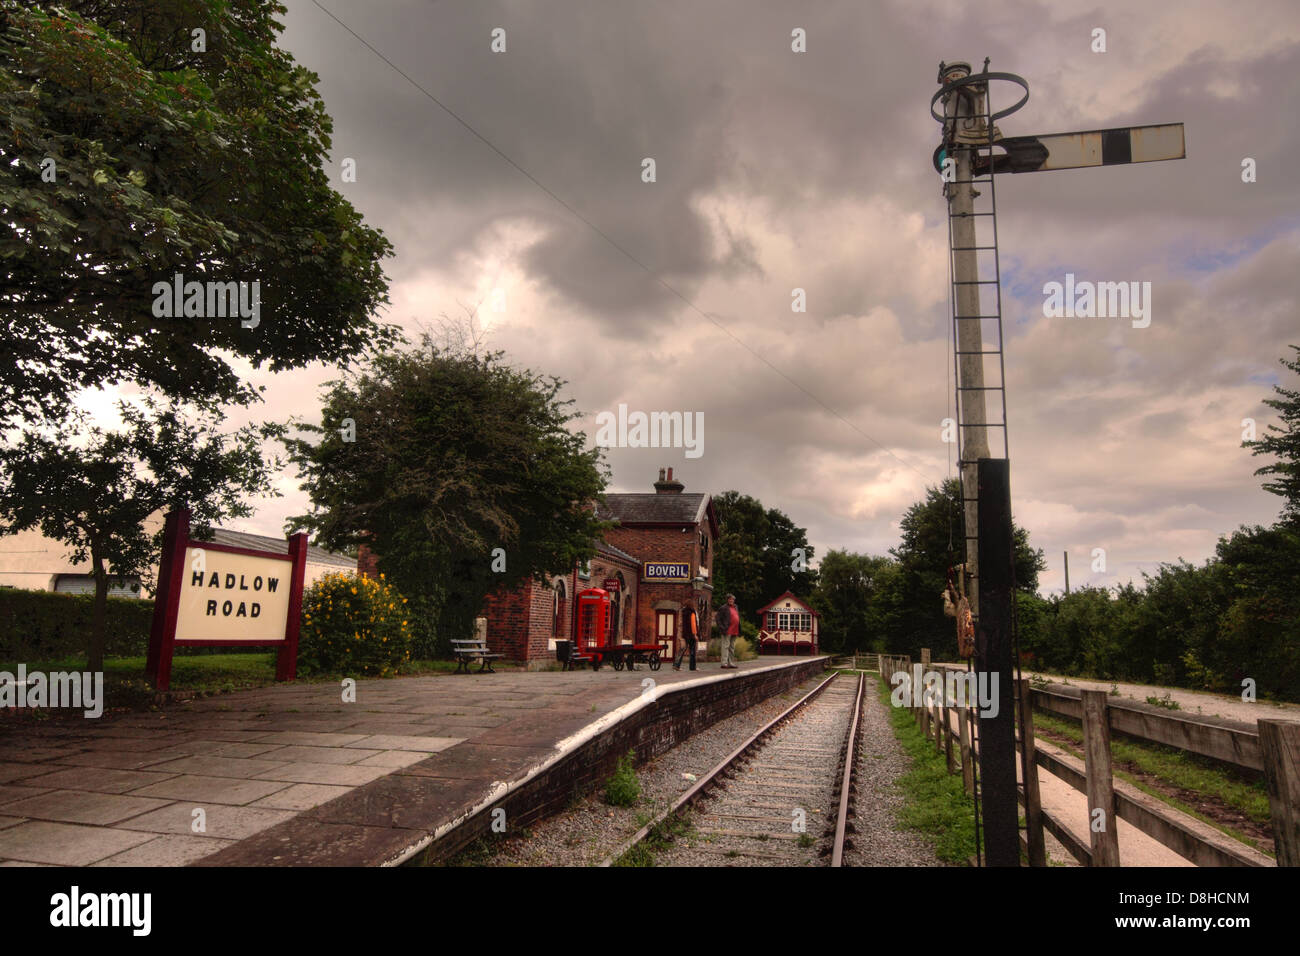 Hadlow strada conservati storica stazione ferroviaria, con segnale sul Wirral modo, Merseyside England, Regno Unito Foto Stock